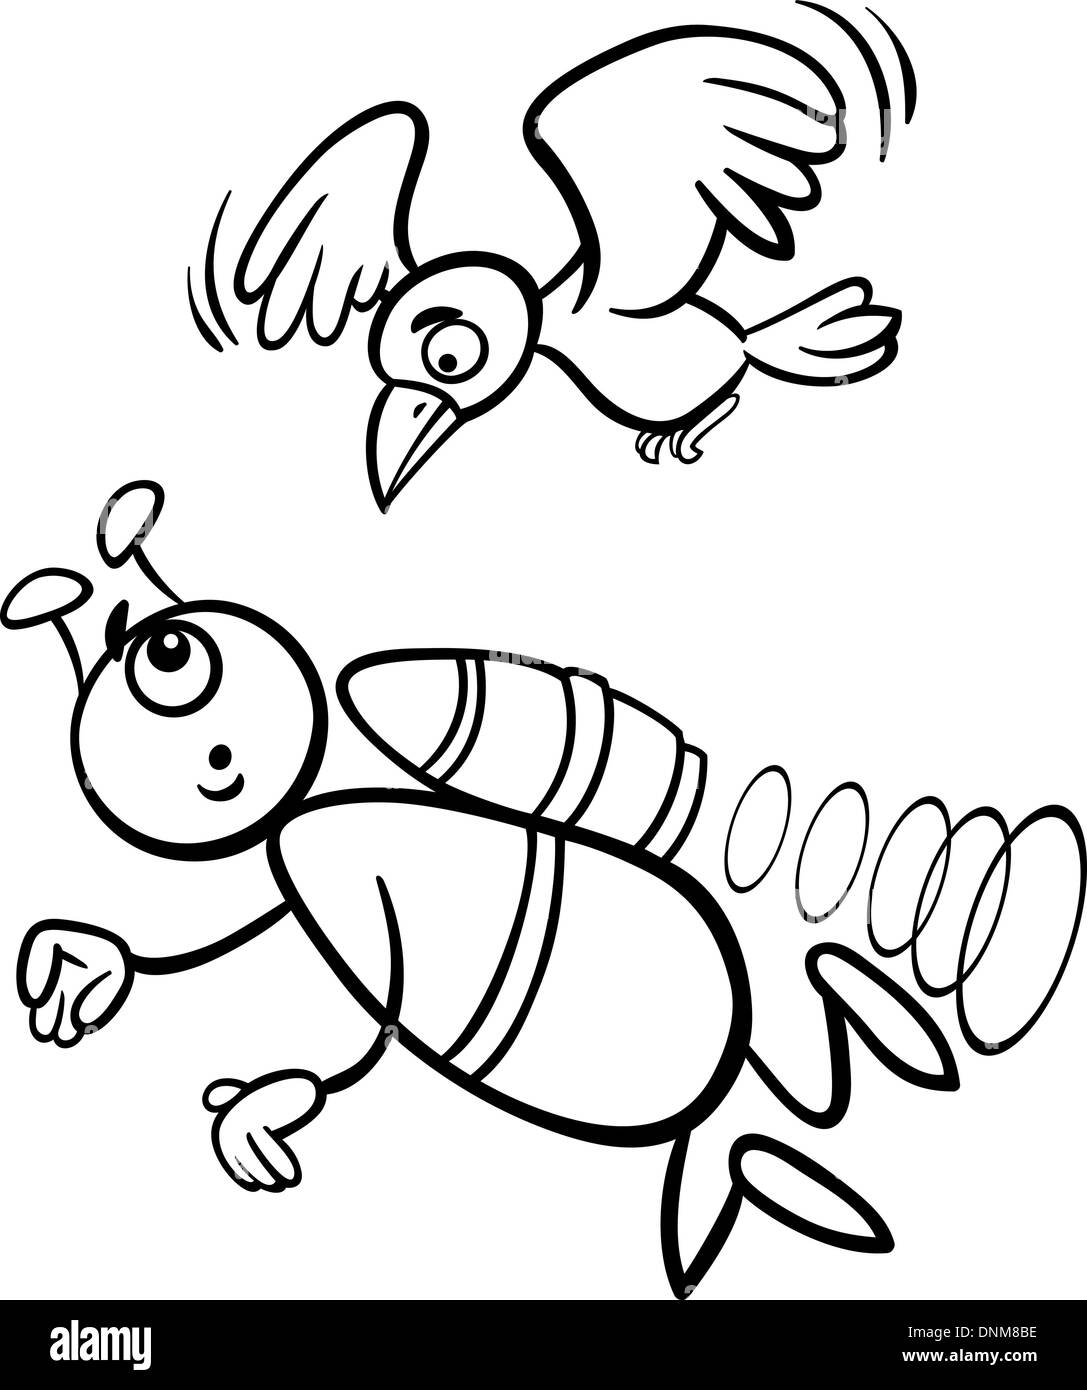 Schwarz / Weiß Cartoon Illustration von lustigen Alien oder Martian Comicfigur für Malbuch mit Vogel fliegen Stock Vektor